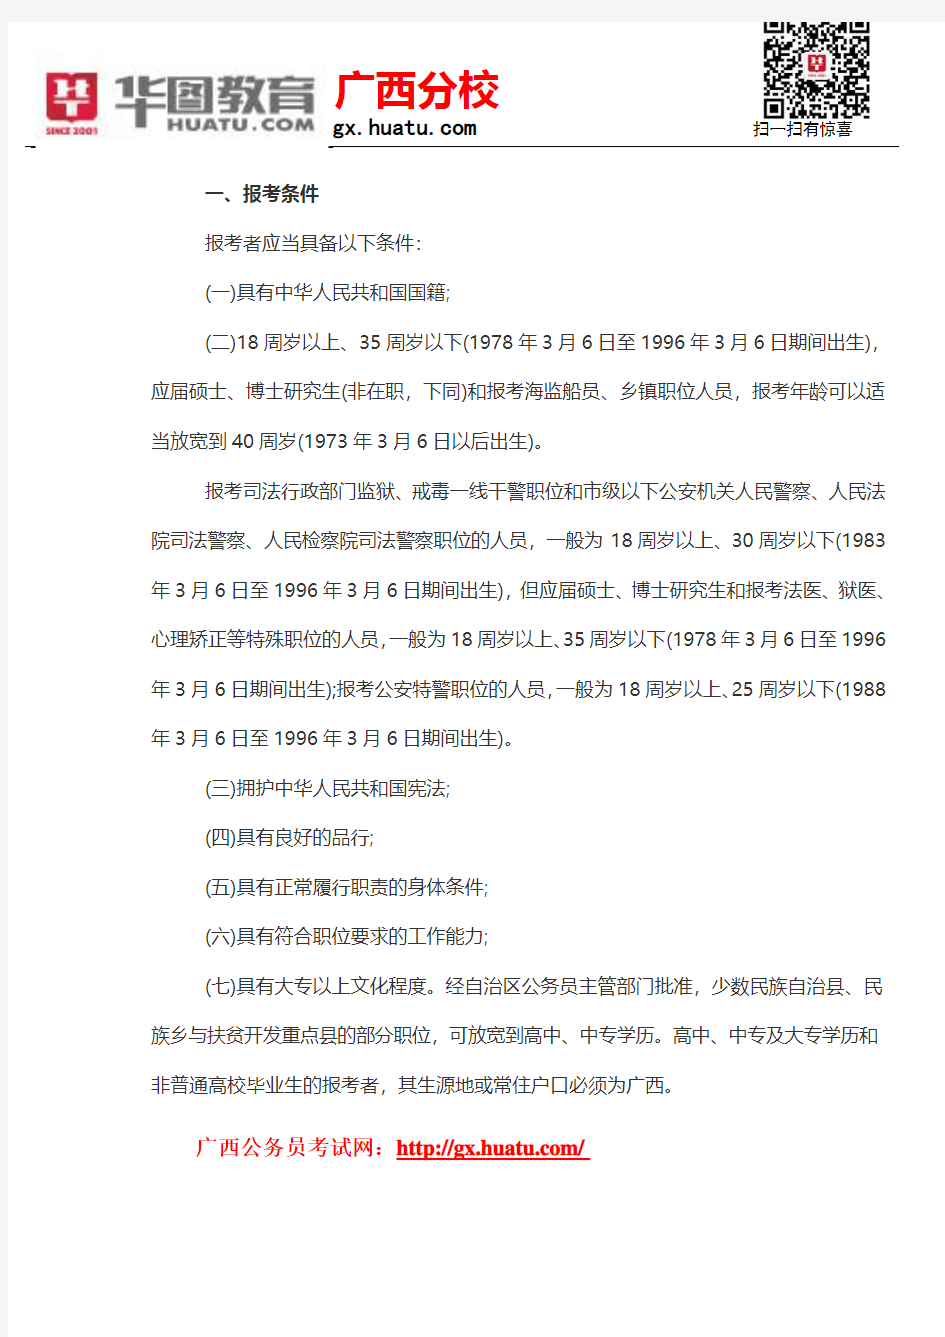 2015年桂林市公务员考试录用公告